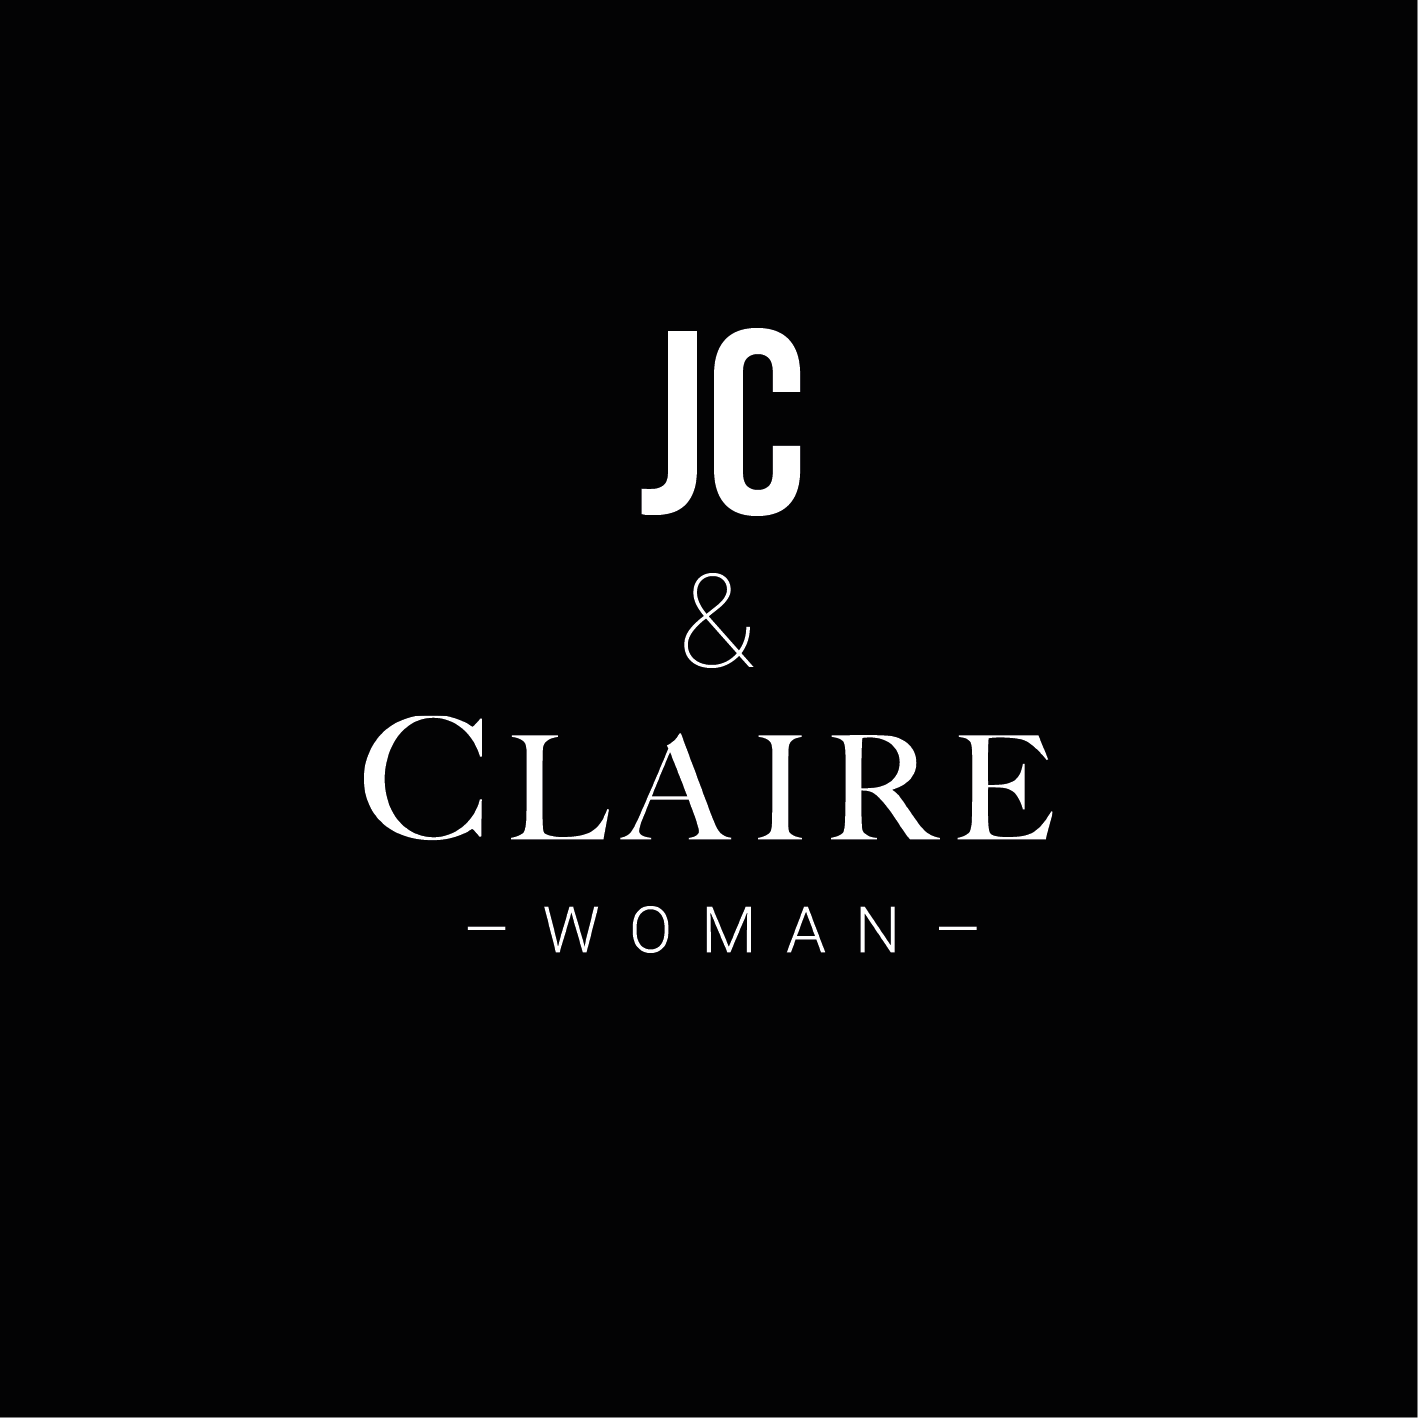 JC woman